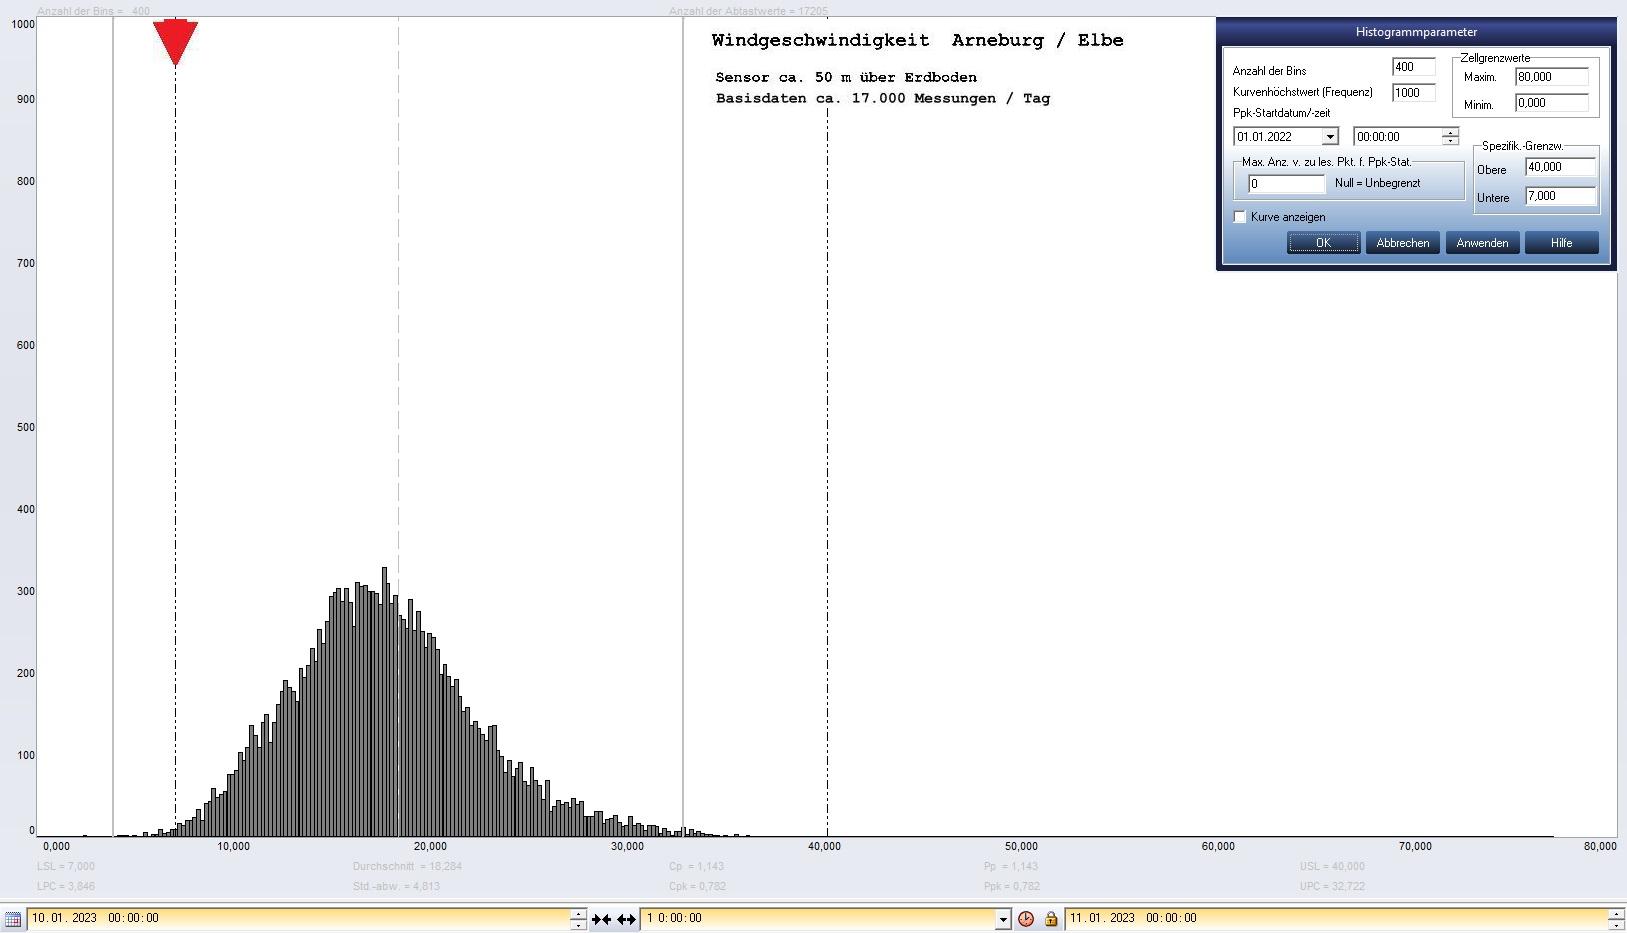 Arneburg Tages-Histogramm Winddaten, 10.01.2023
  Histogramm, Sensor auf Gebude, ca. 50 m ber Erdboden, Basis: 5s-Aufzeichnung